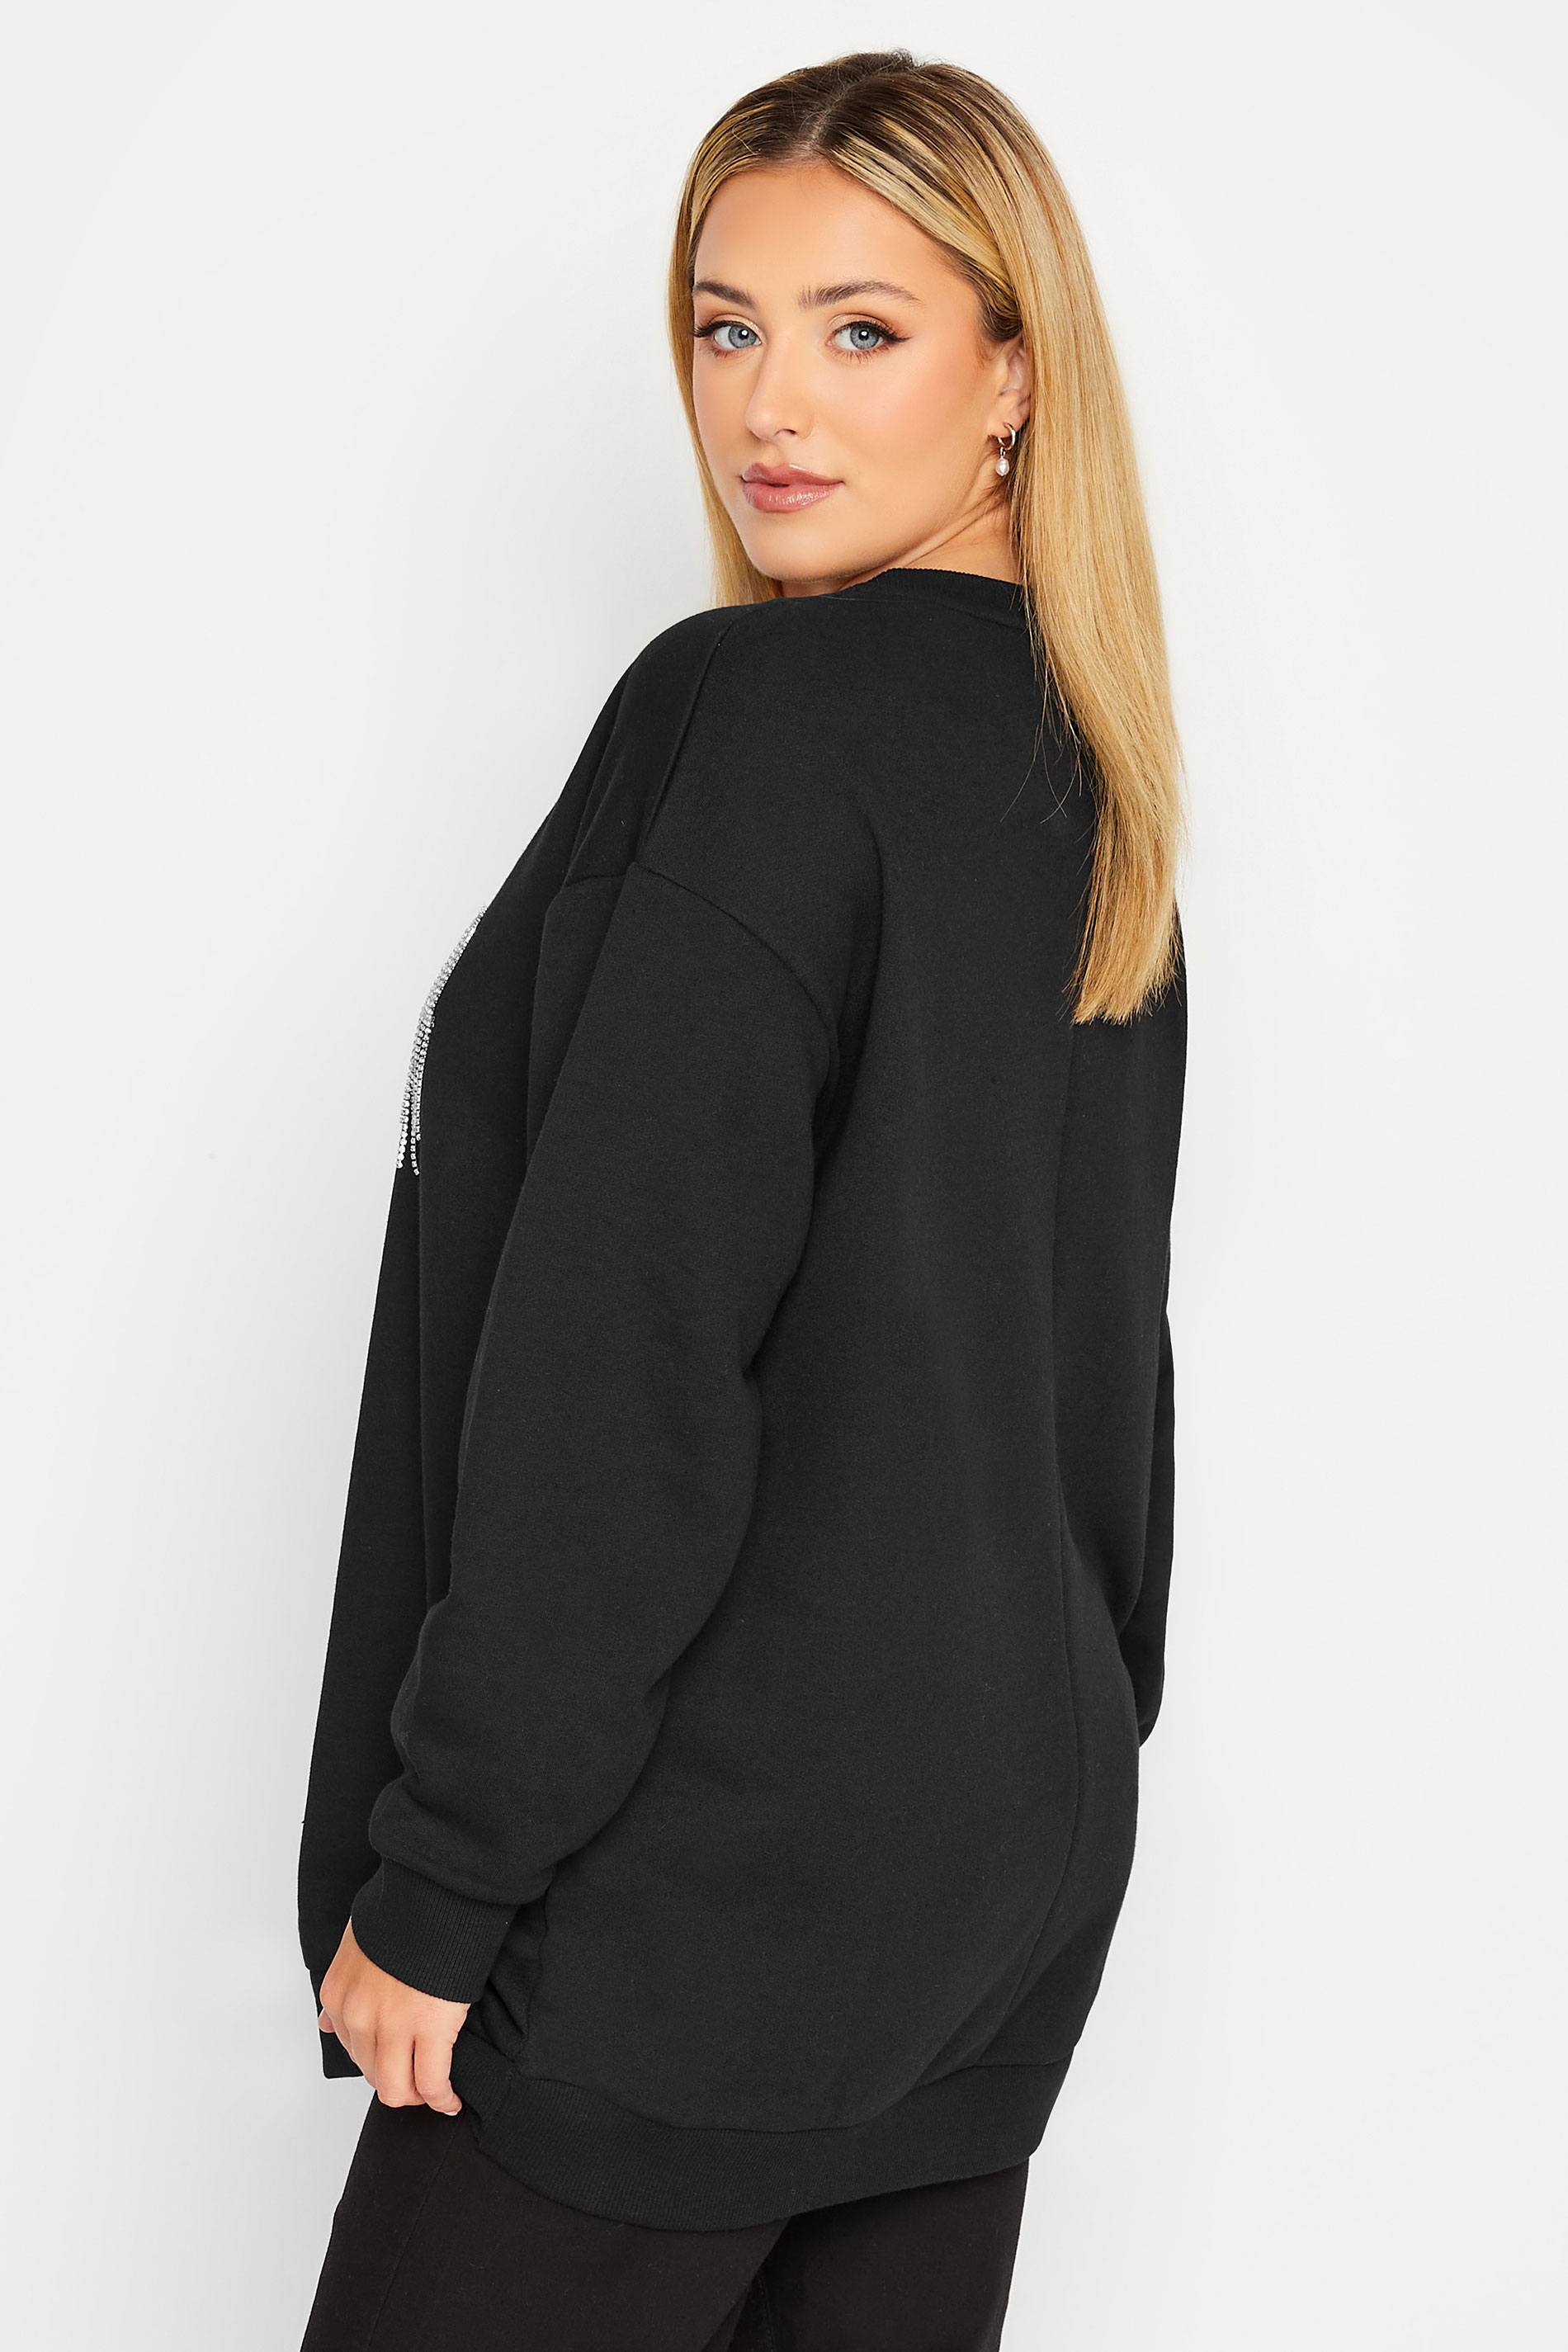 YOURS LUXURY Plus Size Black 'Glam' Diamante Embellished Sweatshirt | Yours Clothing 3